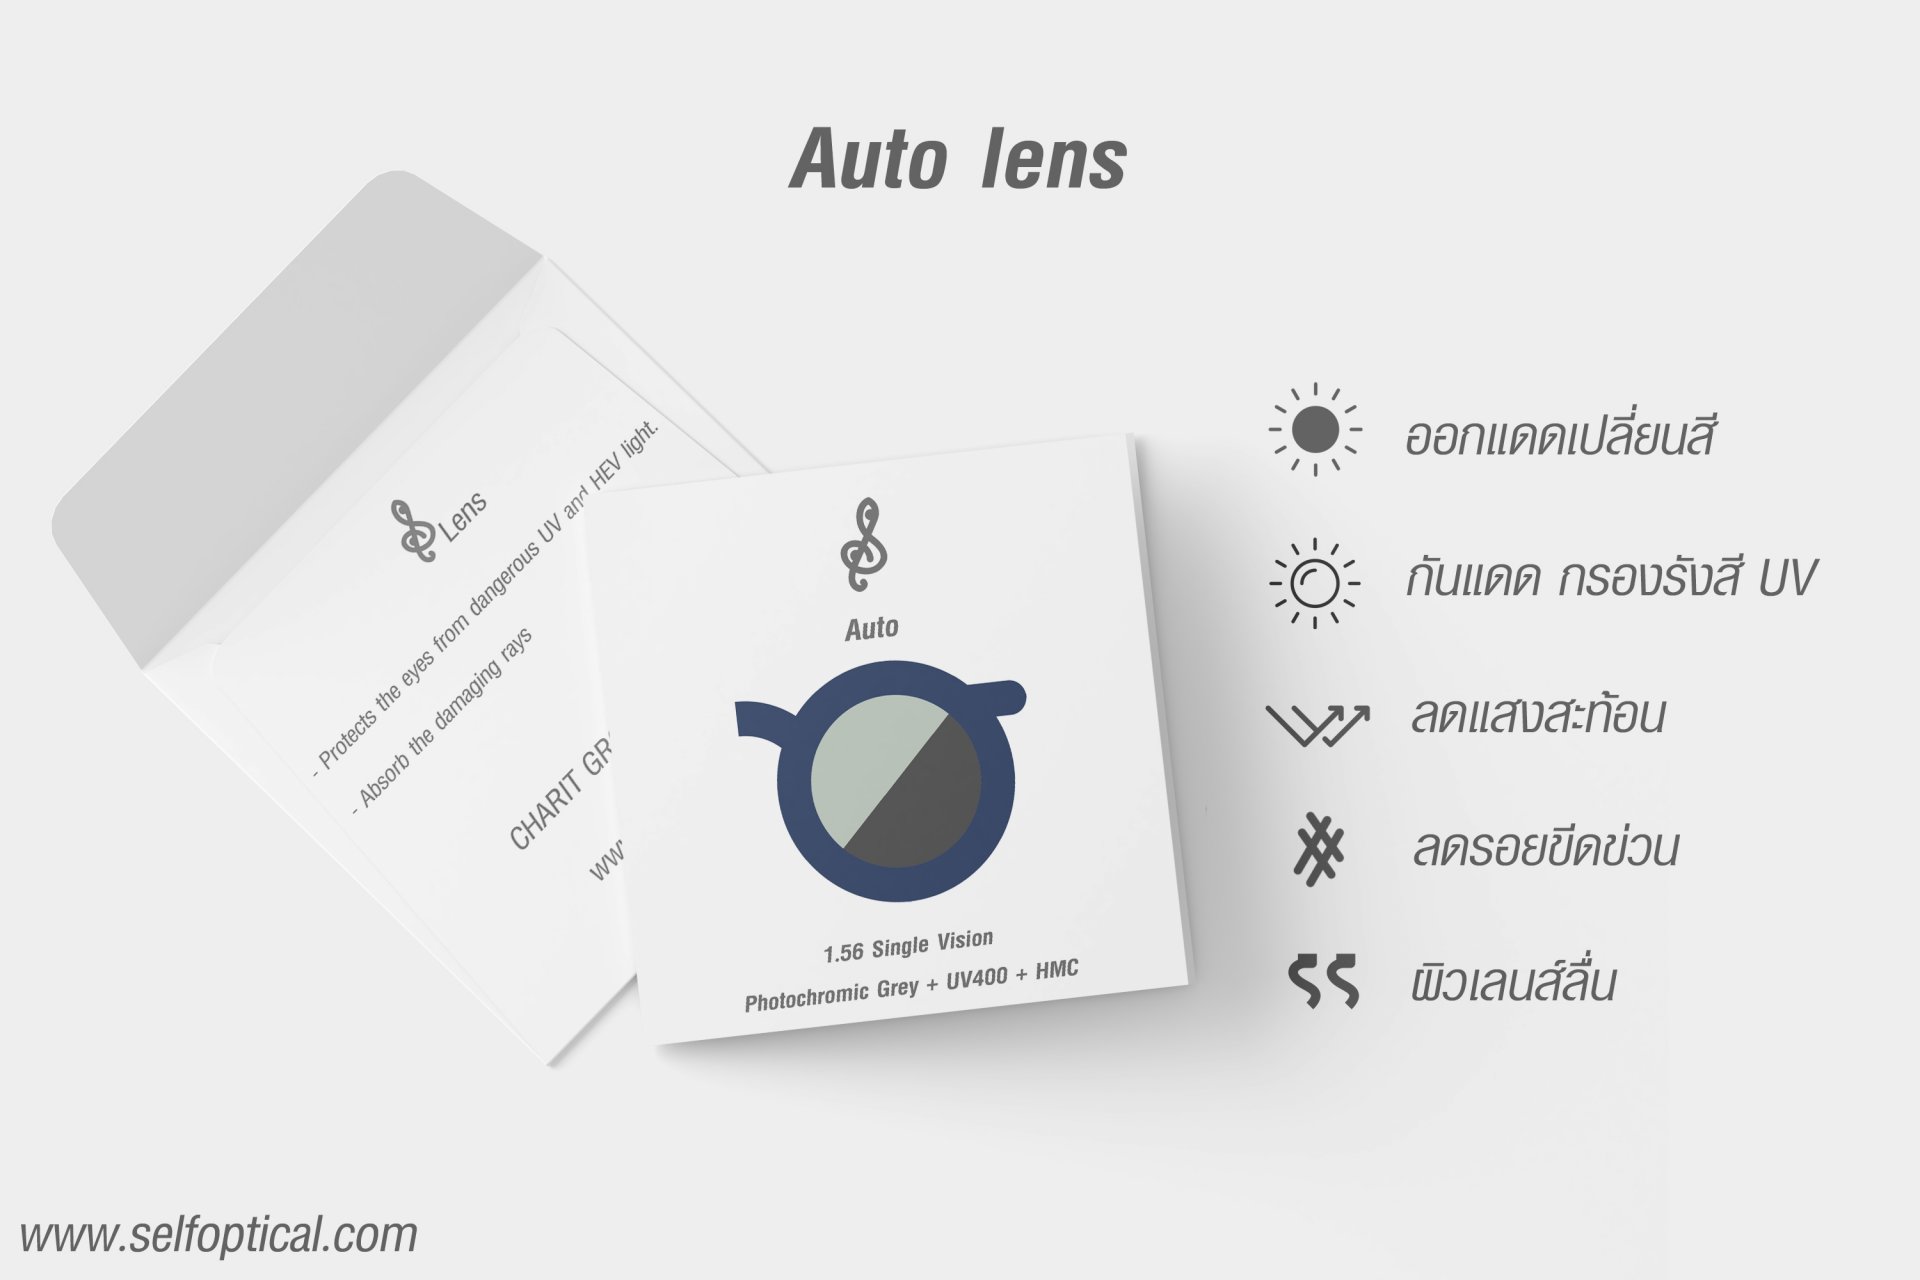 Multicoat Auto Lens